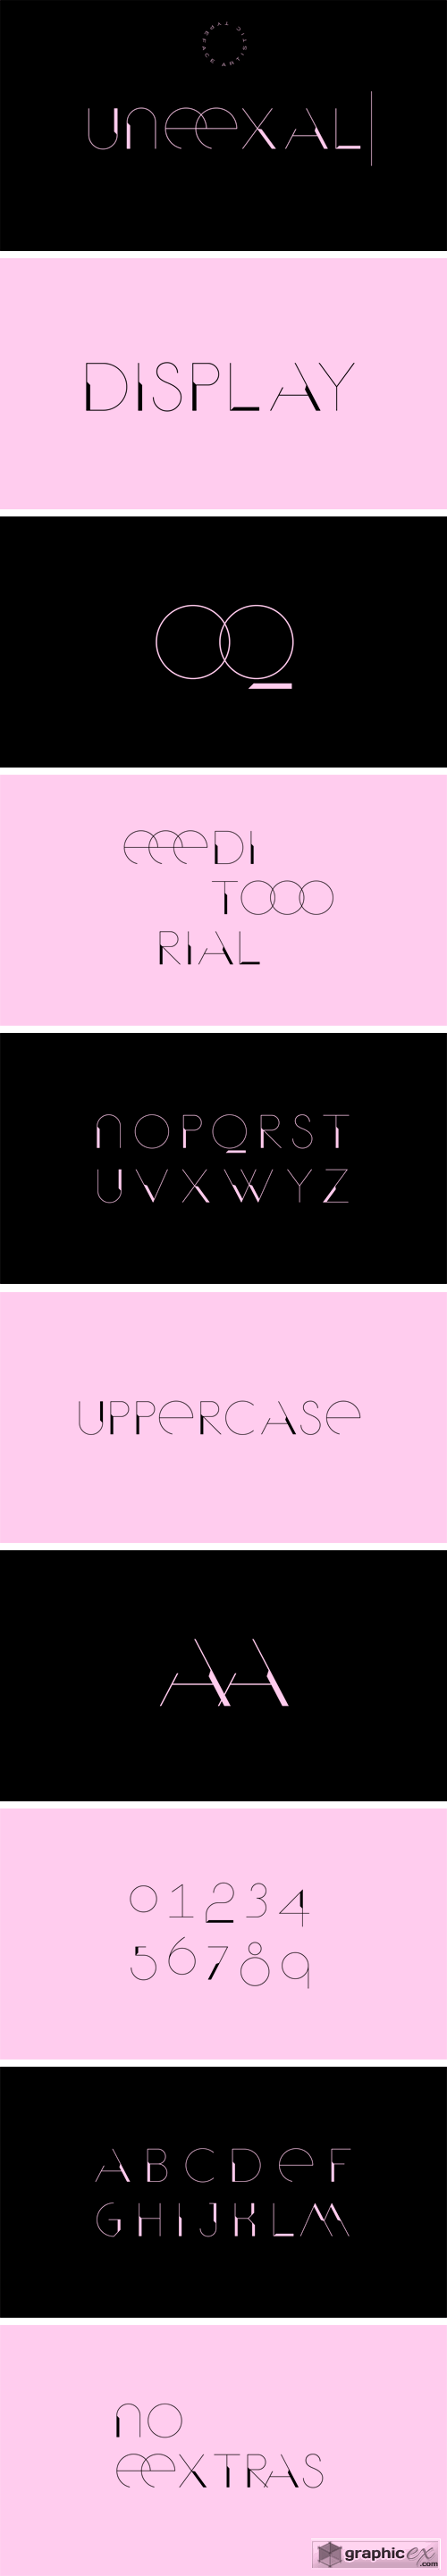 UNEEXAL Display Typeface